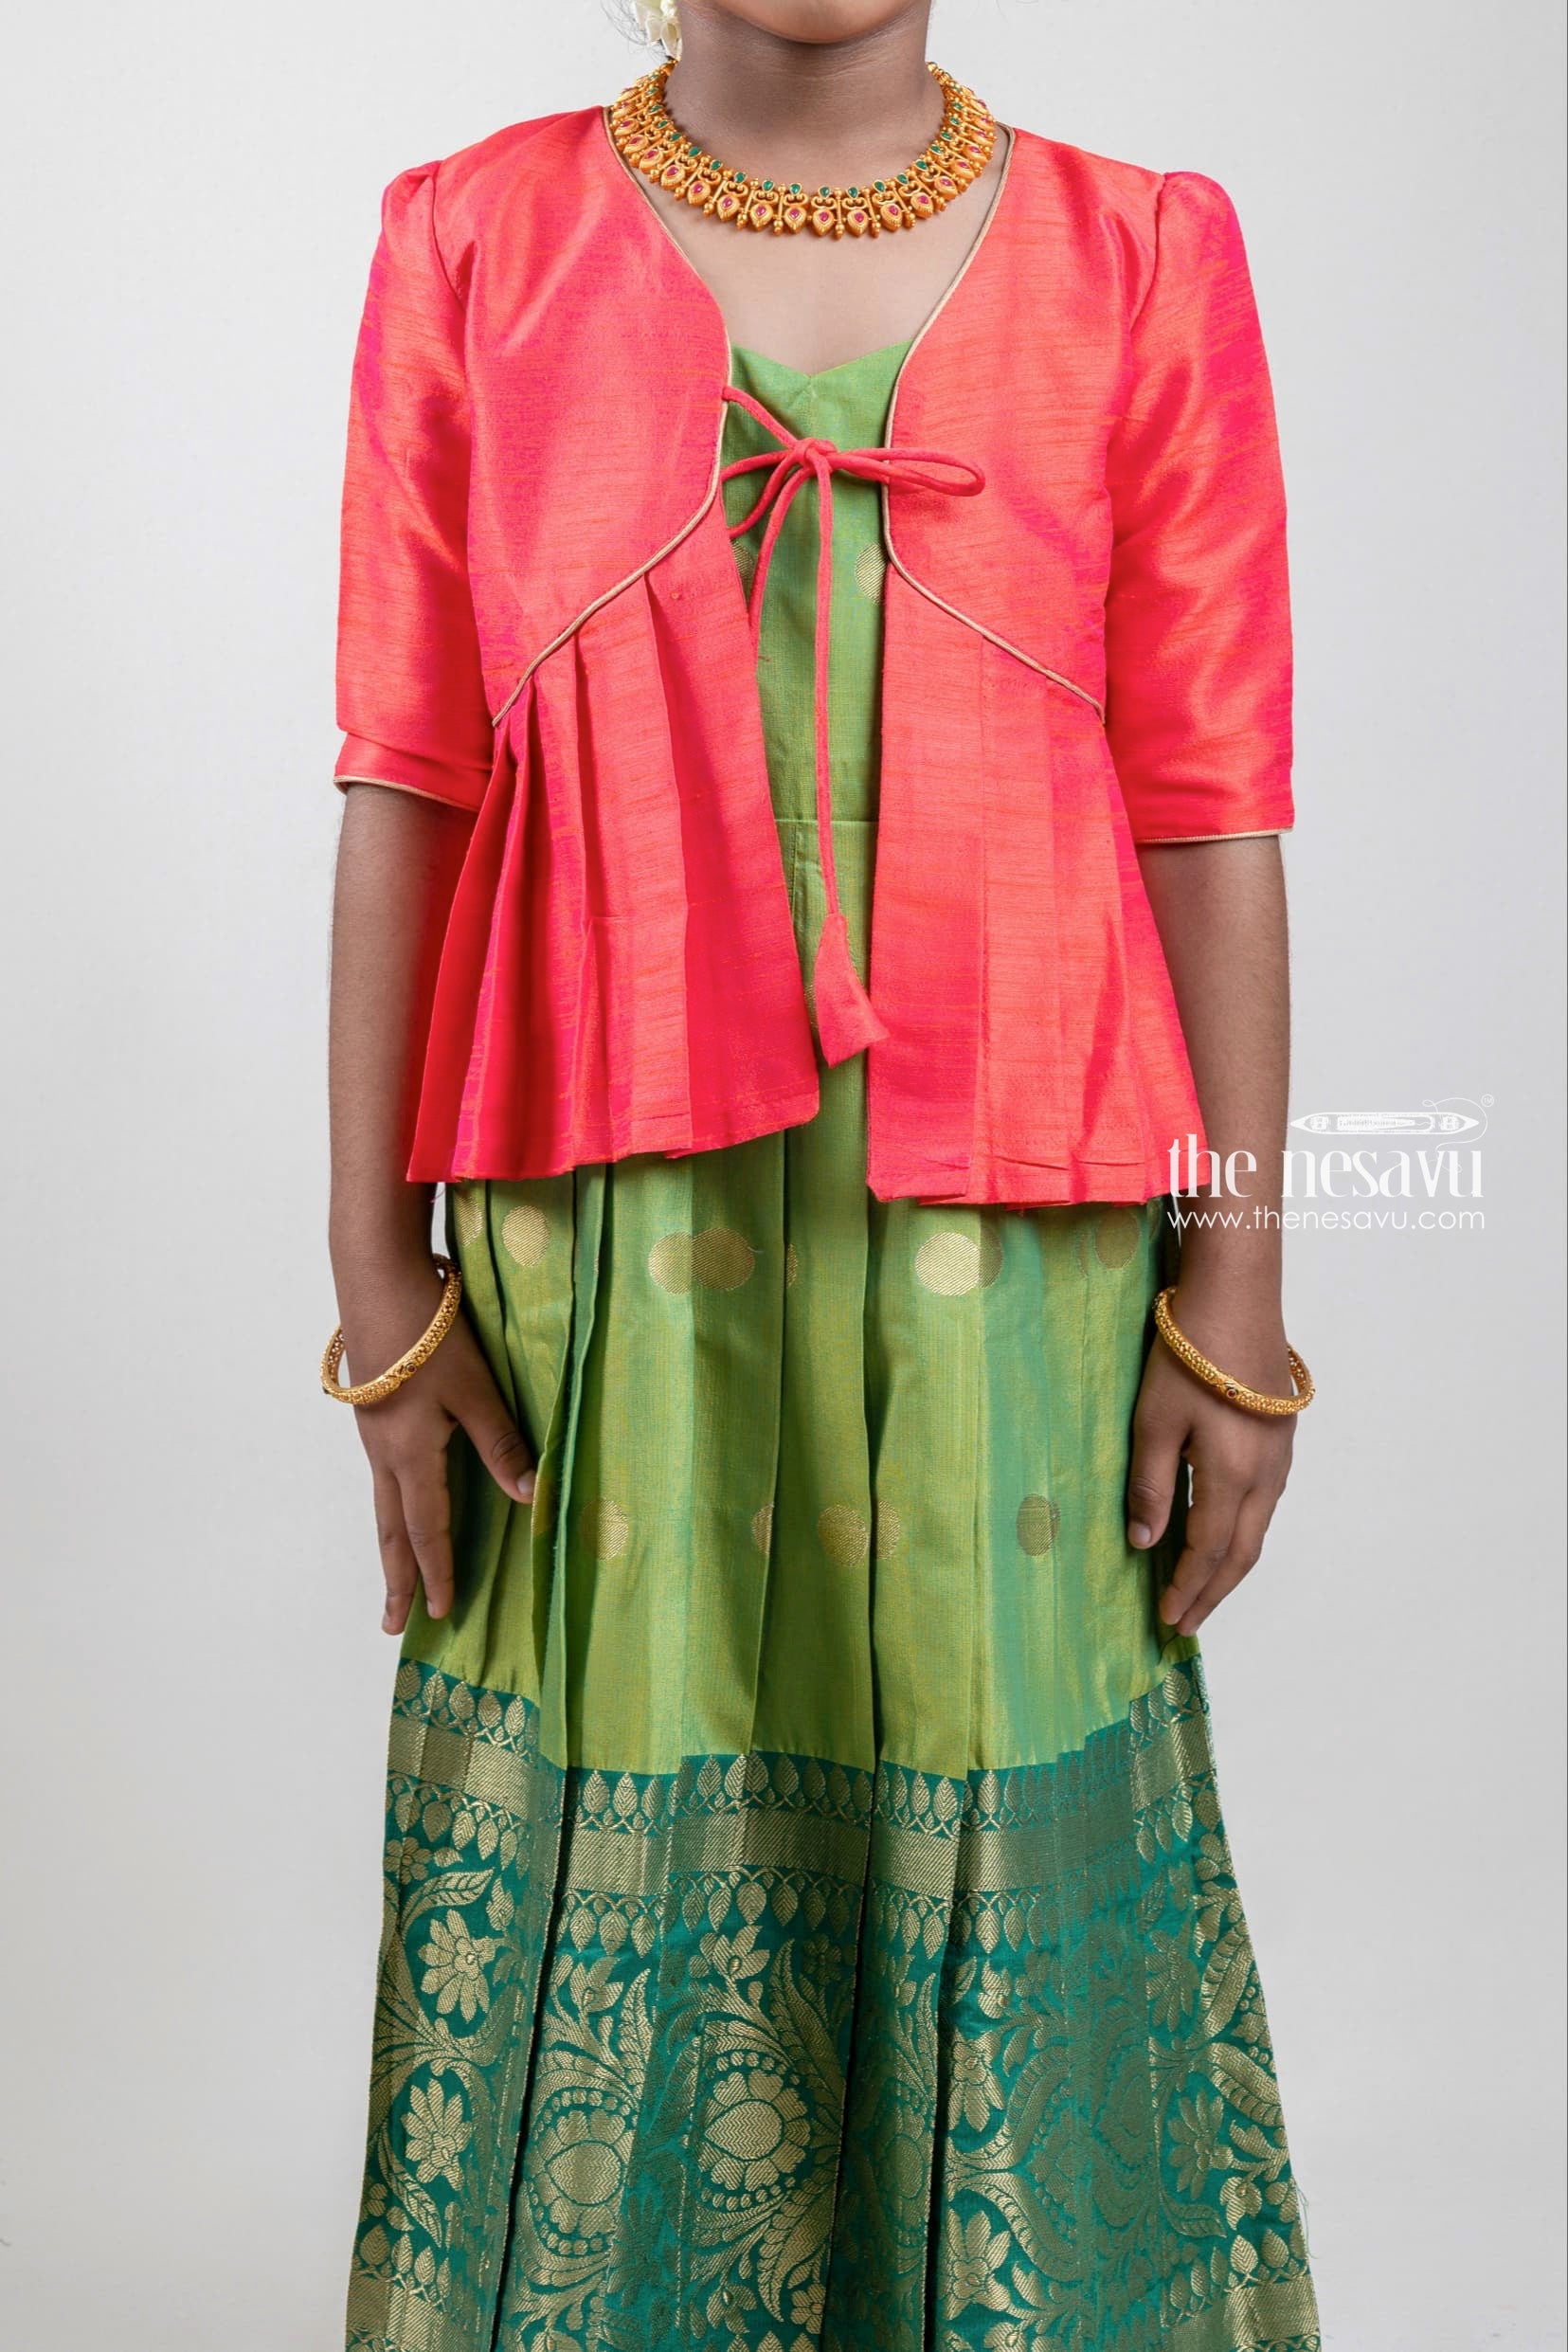 Buy Green N Red Georgette Anarkali Suit Party Wear Online at Best Price |  Cbazaar